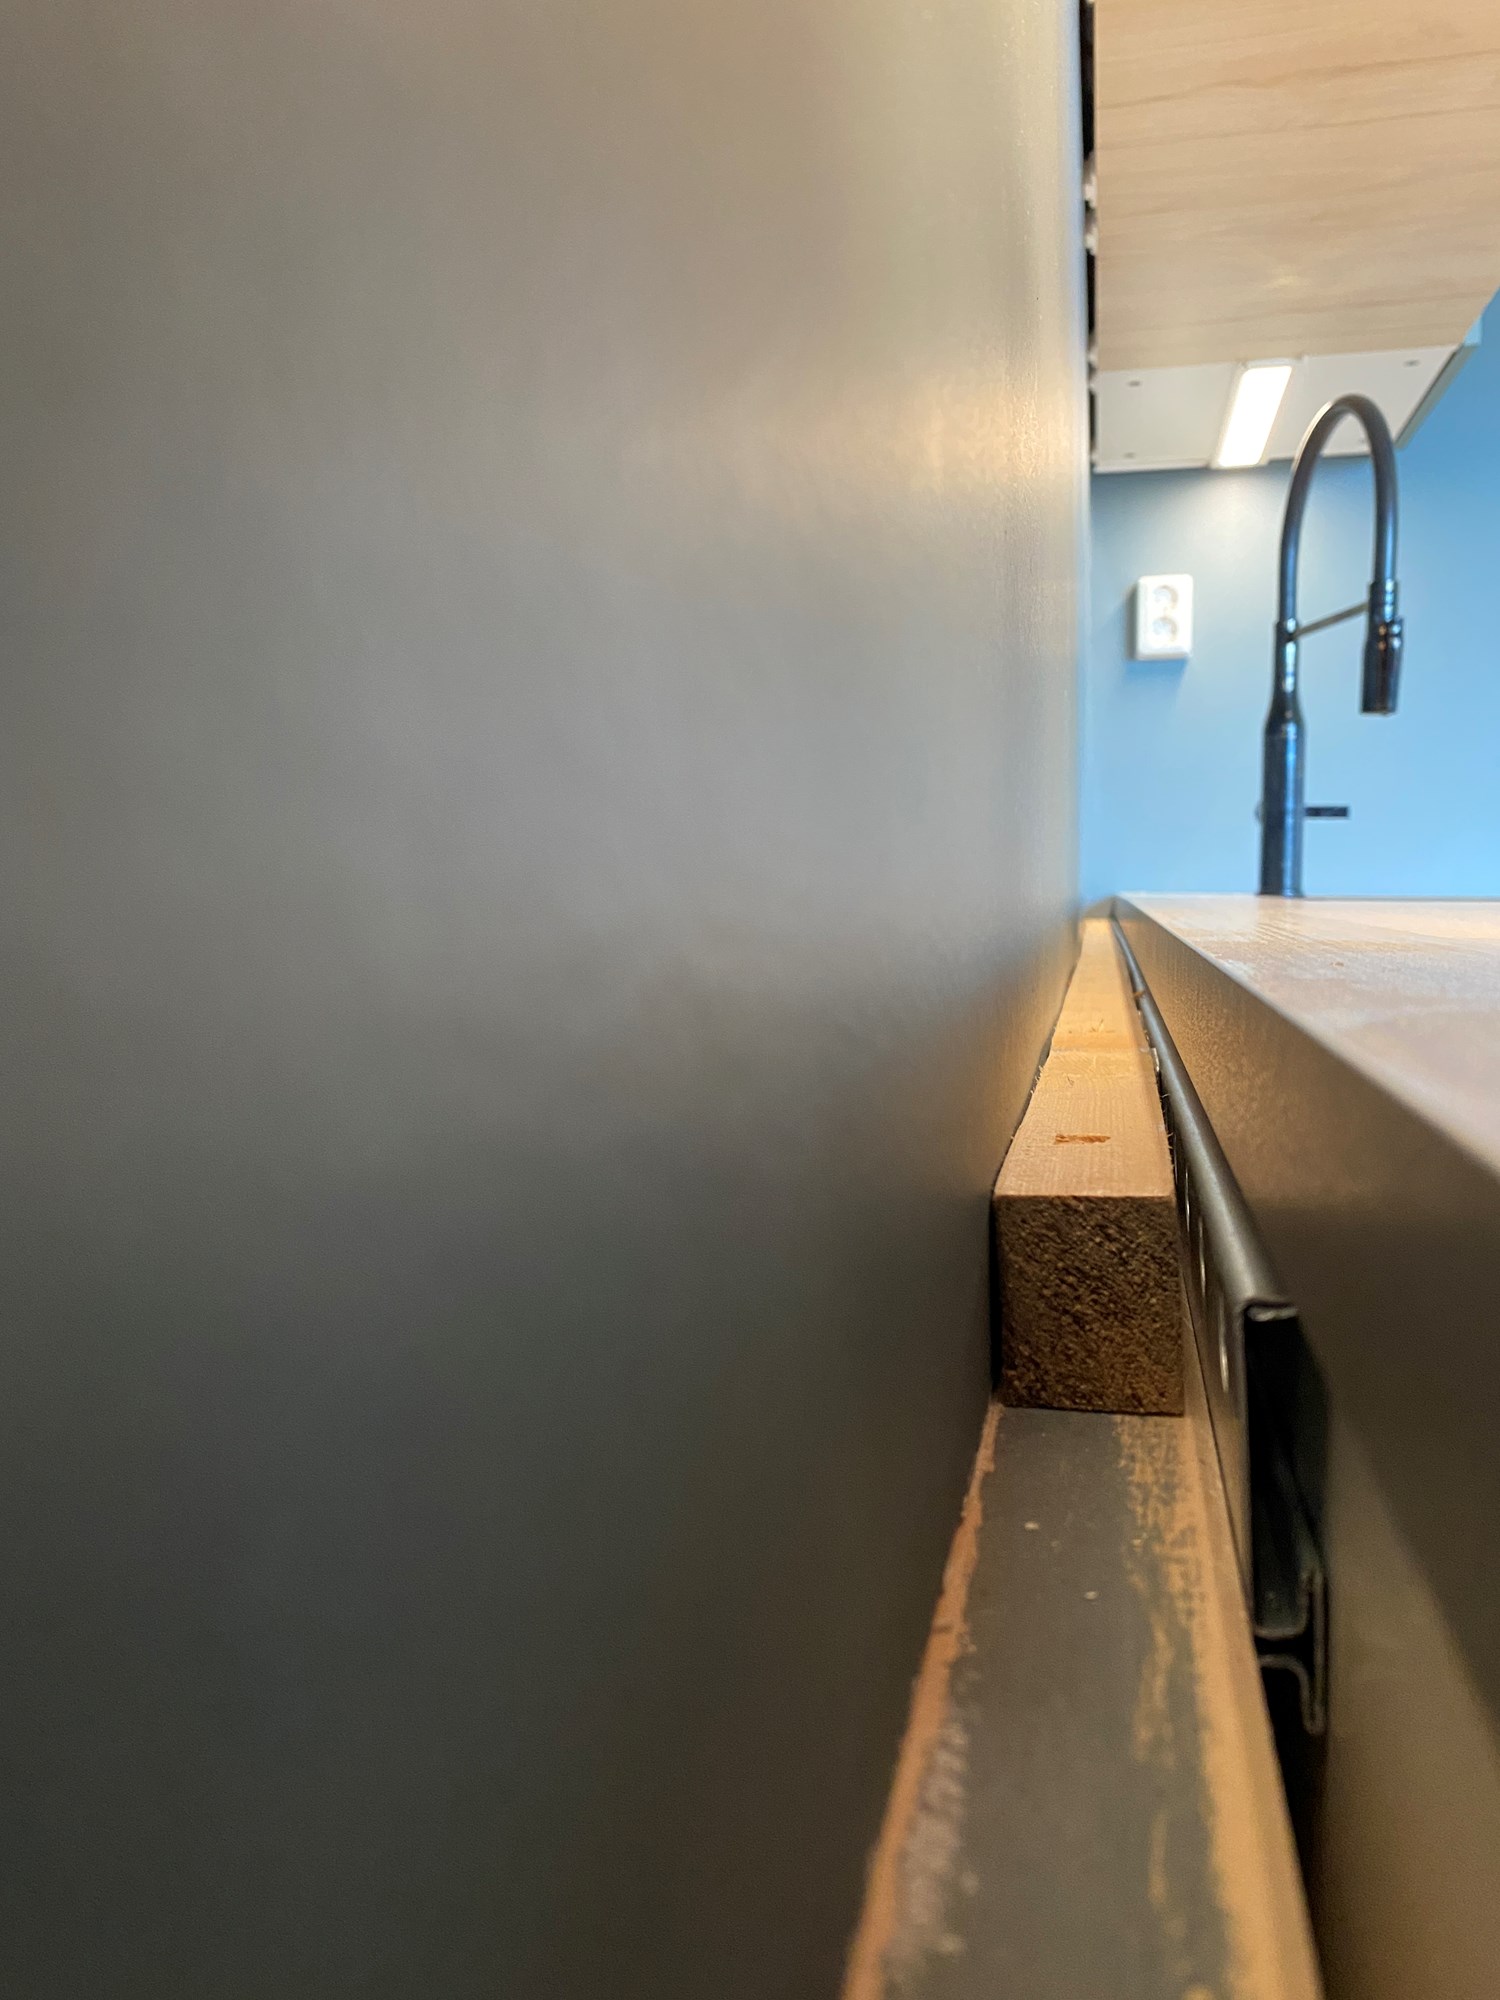 Tette mellomrom mellom benkeplate og vegg på kjøkken - IMG_3244.JPG - Halvliter